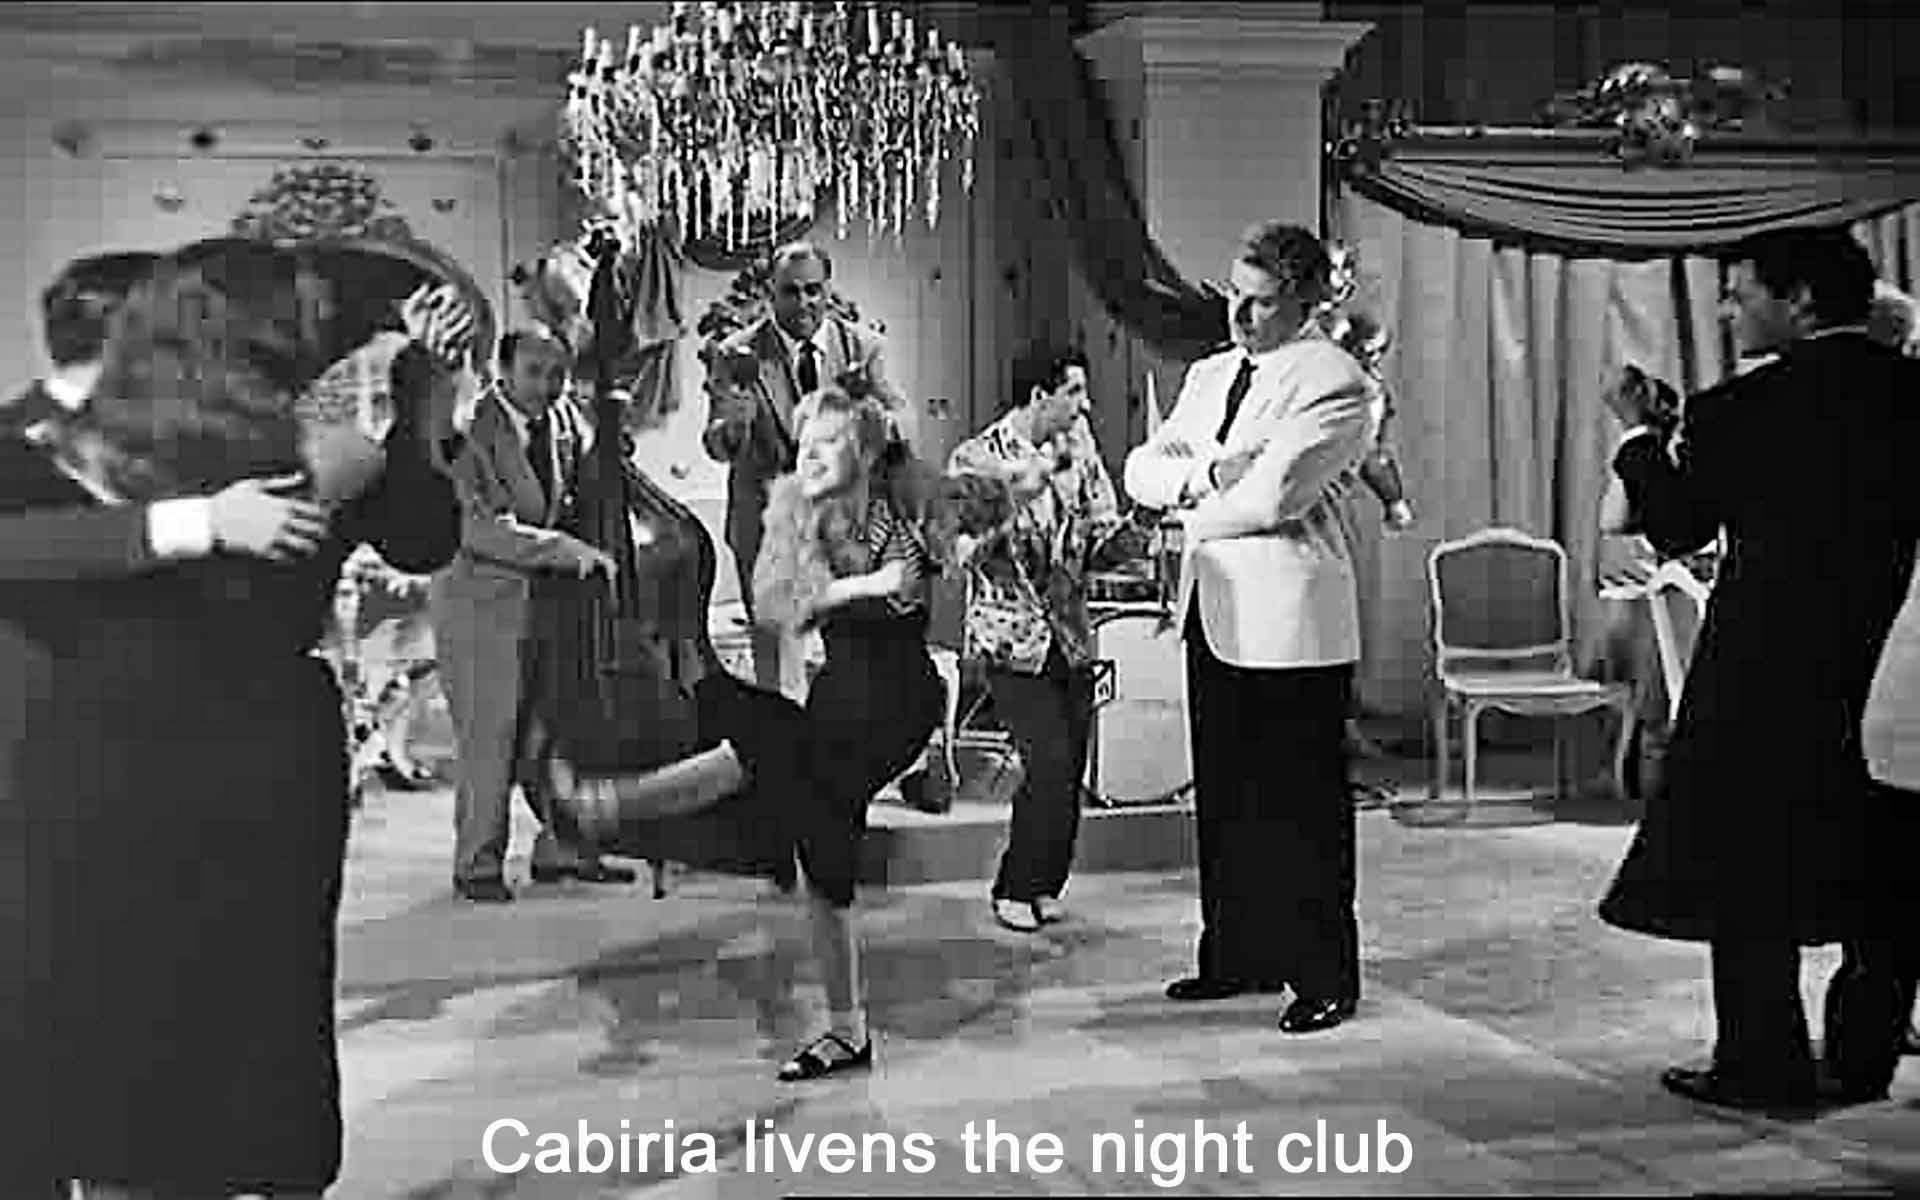 Cabiria livens the night club